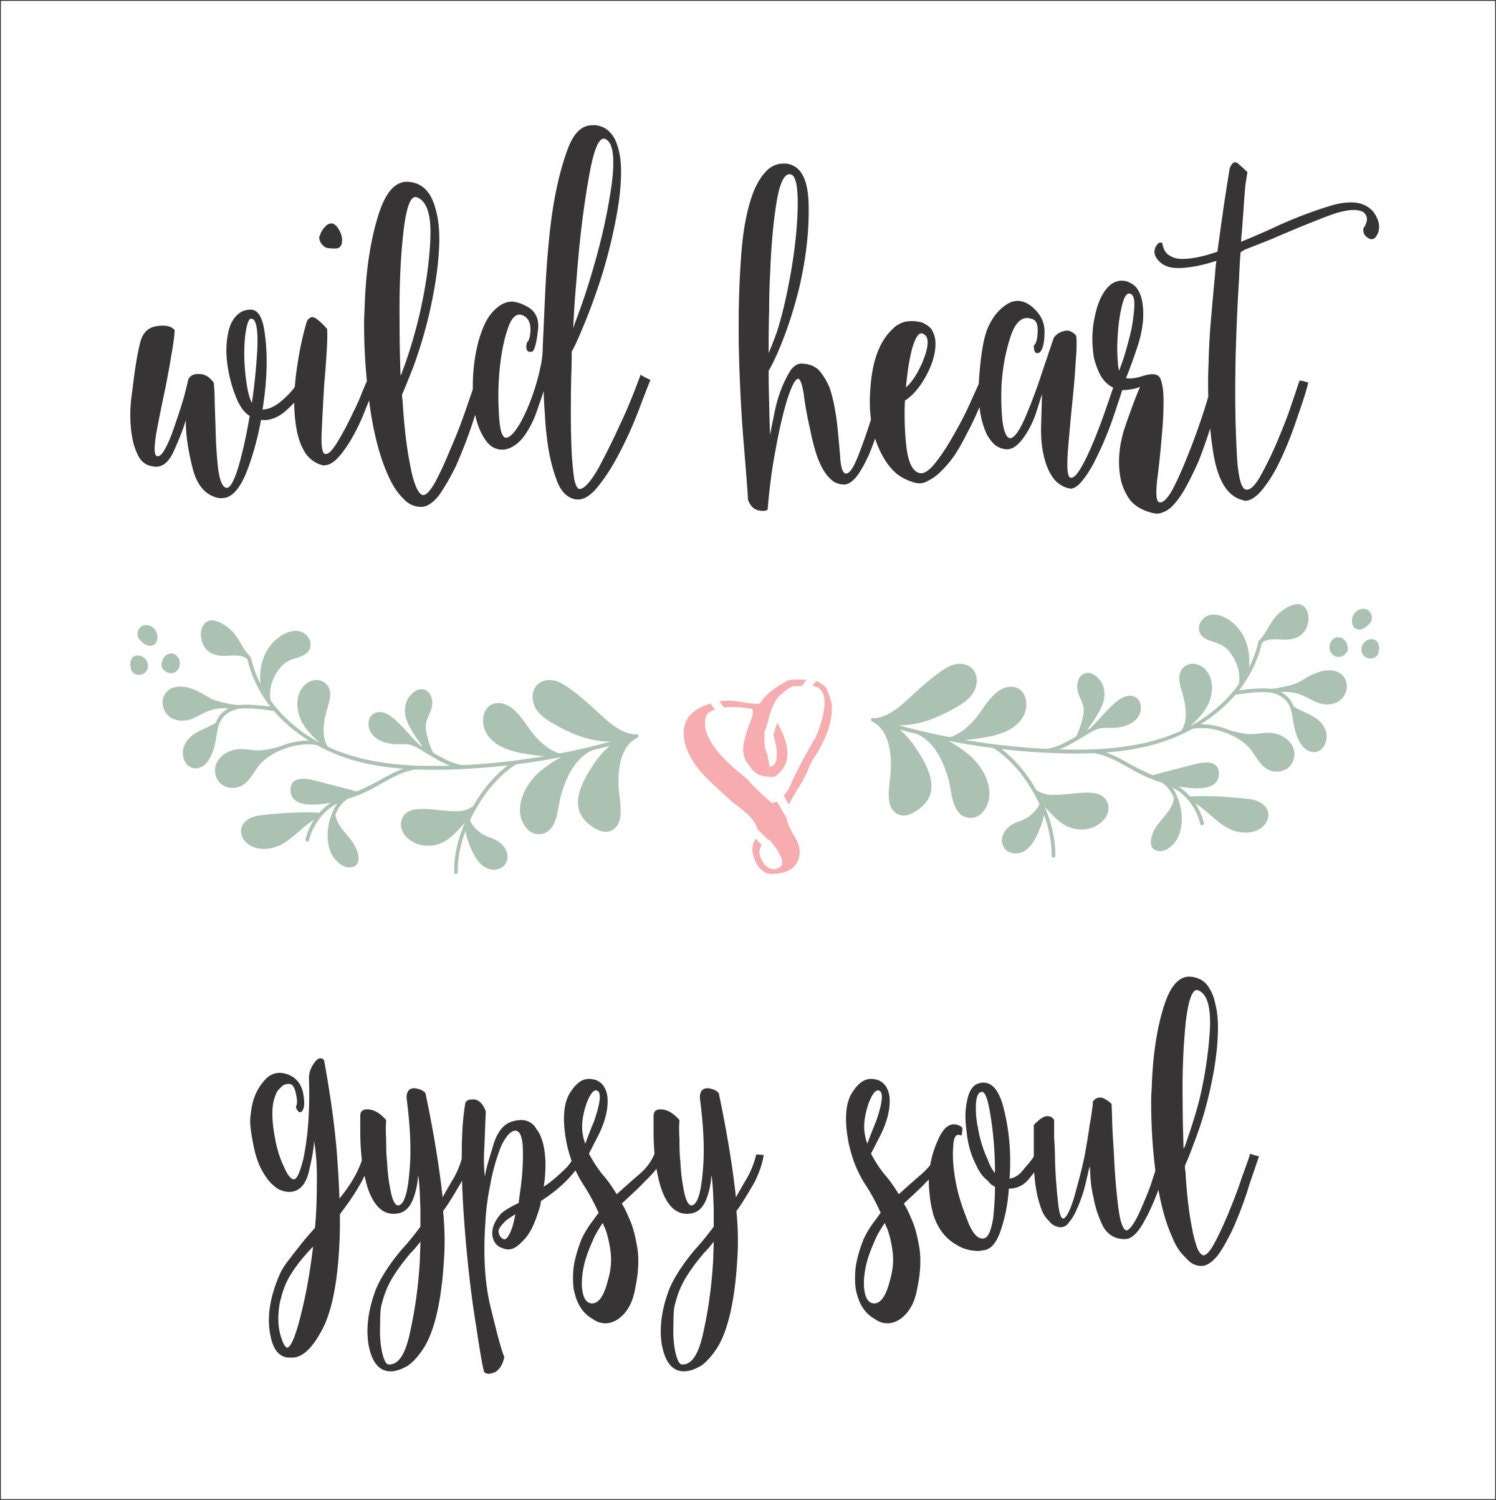 wild heart gypsy soul